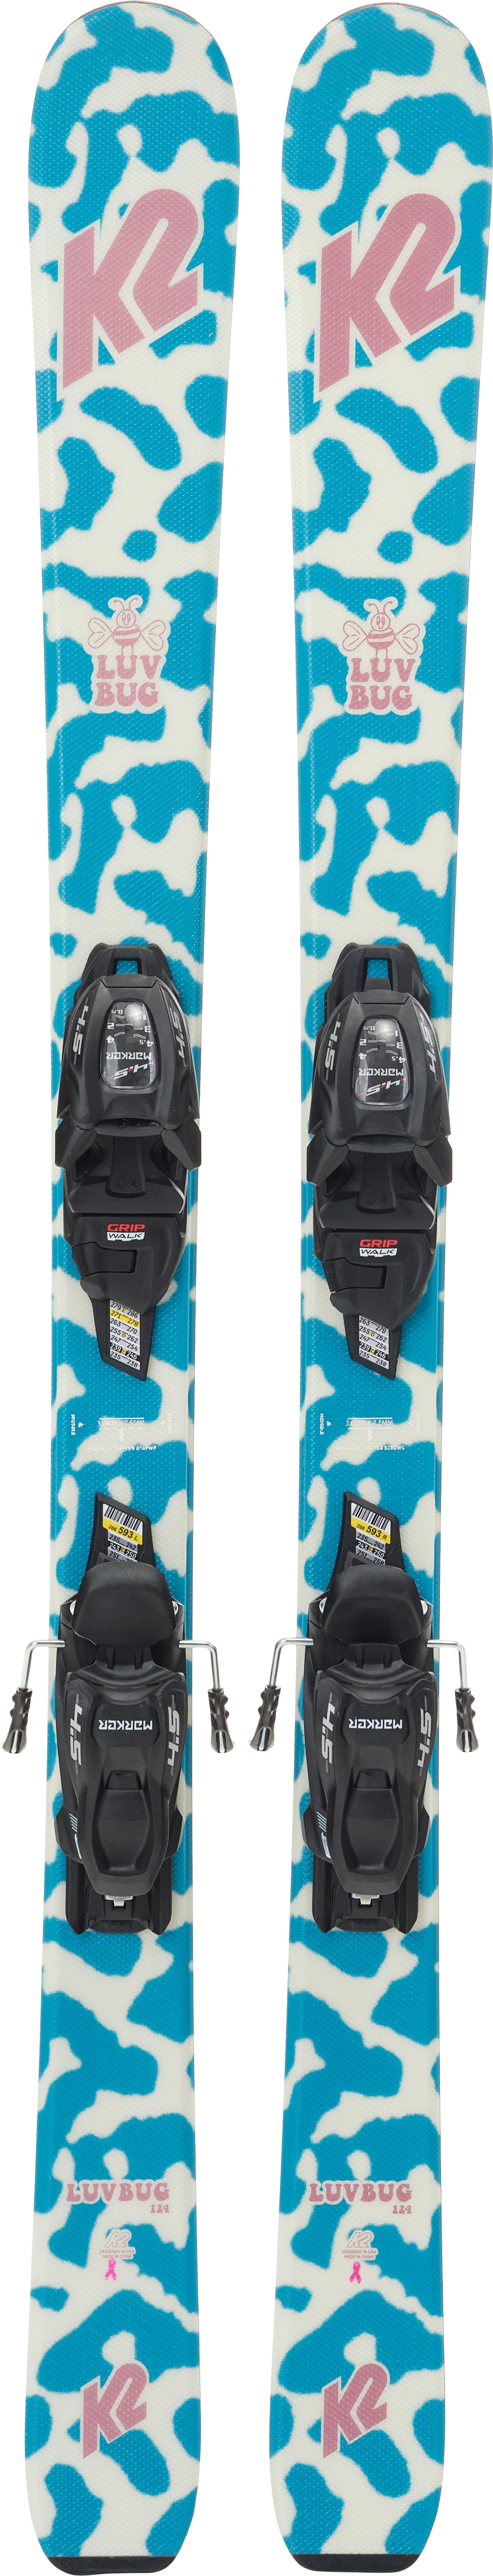 K2 Luv Bug Fdt 4.5 Skier inkl. Bindungen, 88 cm von K2